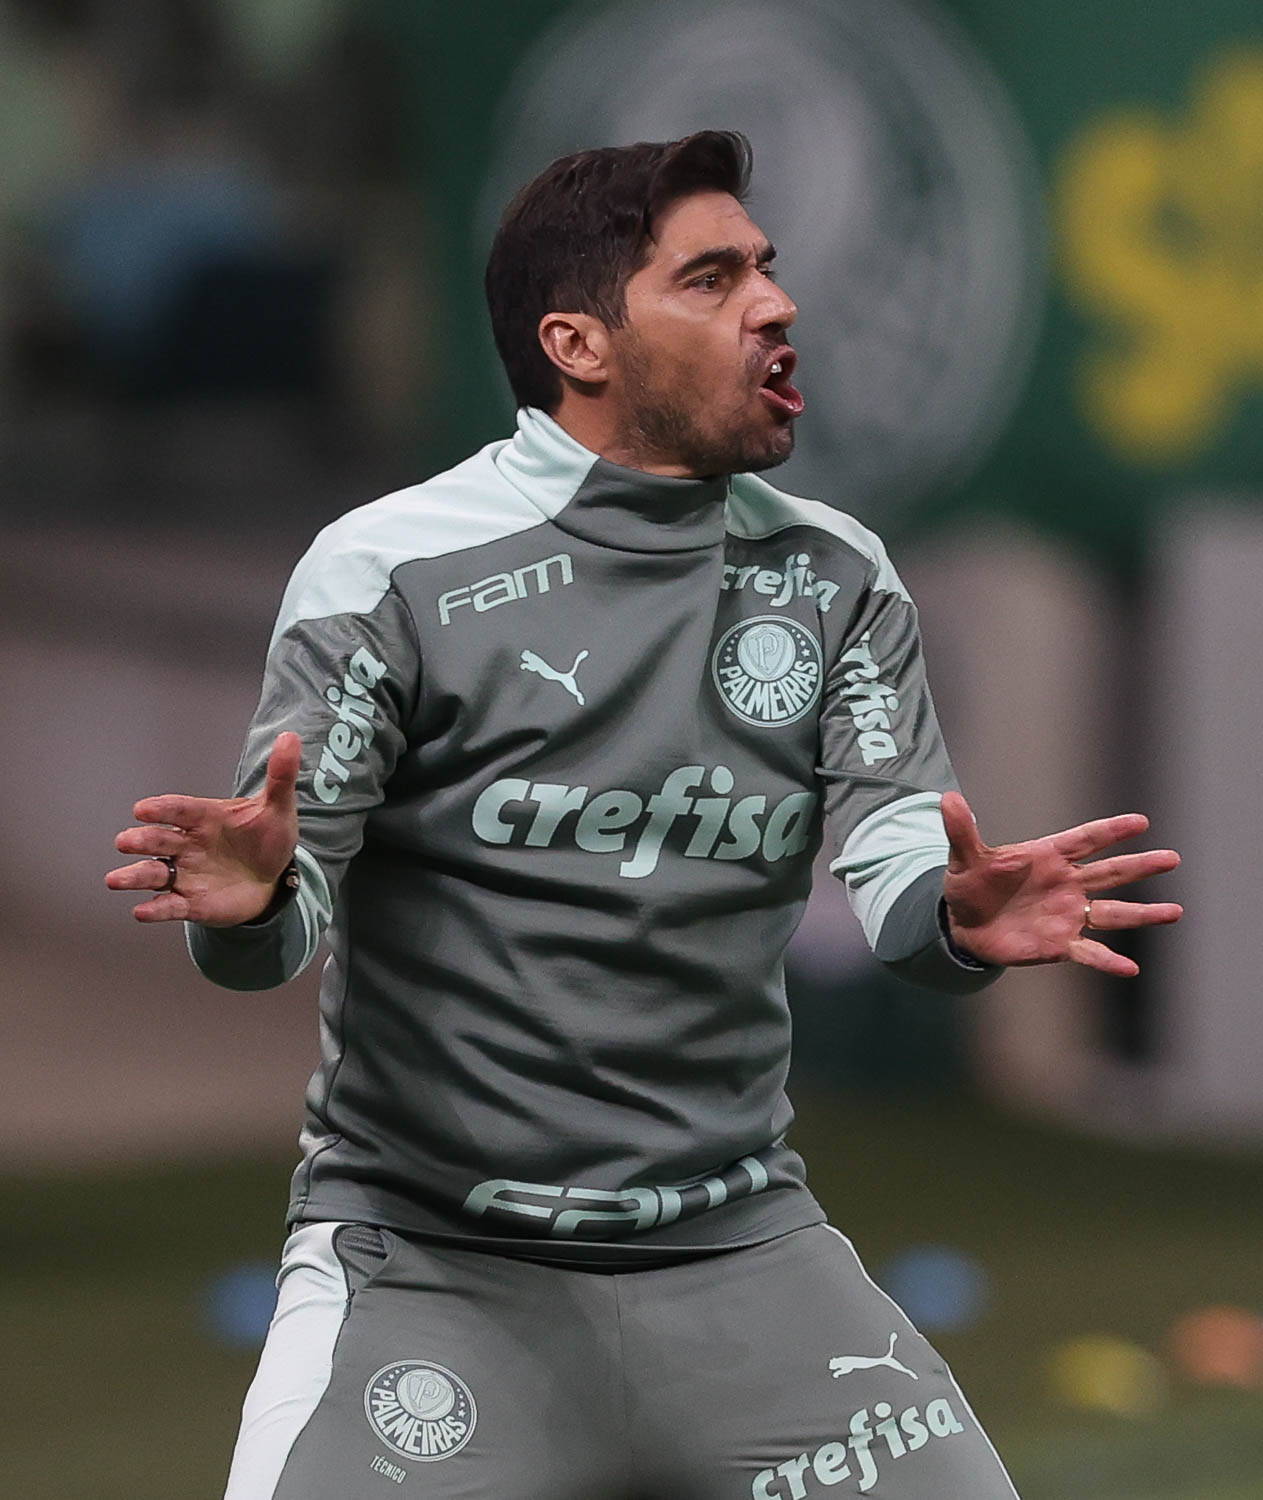 GE Palmeiras #131 - Time cascudo, escalação e "identidade de decisão": tudo sobre a final do Paulistão